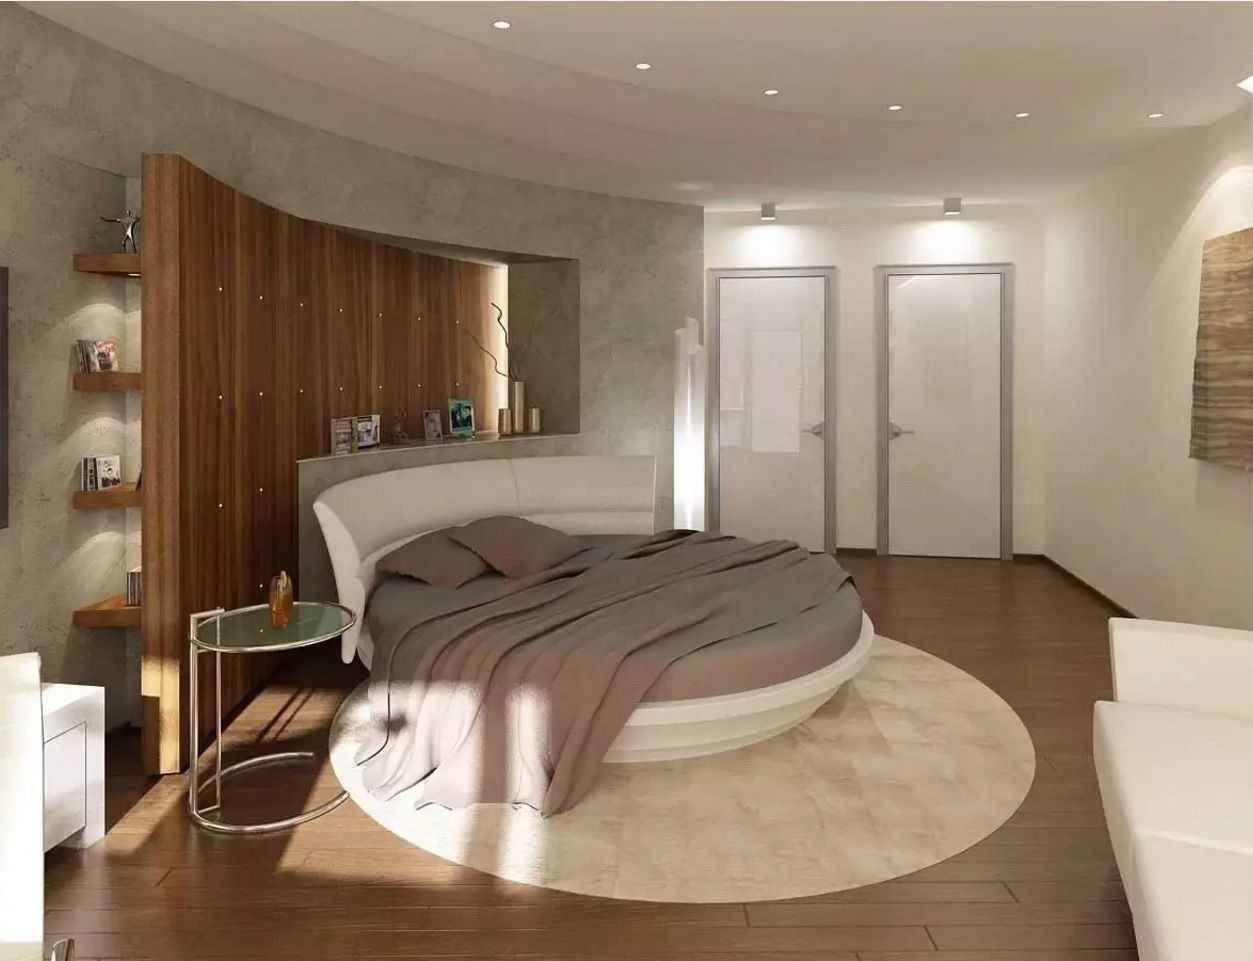 تخت خواب گرد سفید که برای ایجاد هارمونی در دکور اتاق، از فرش و پاتختی دایره ای در کنار آن استفاده شده است